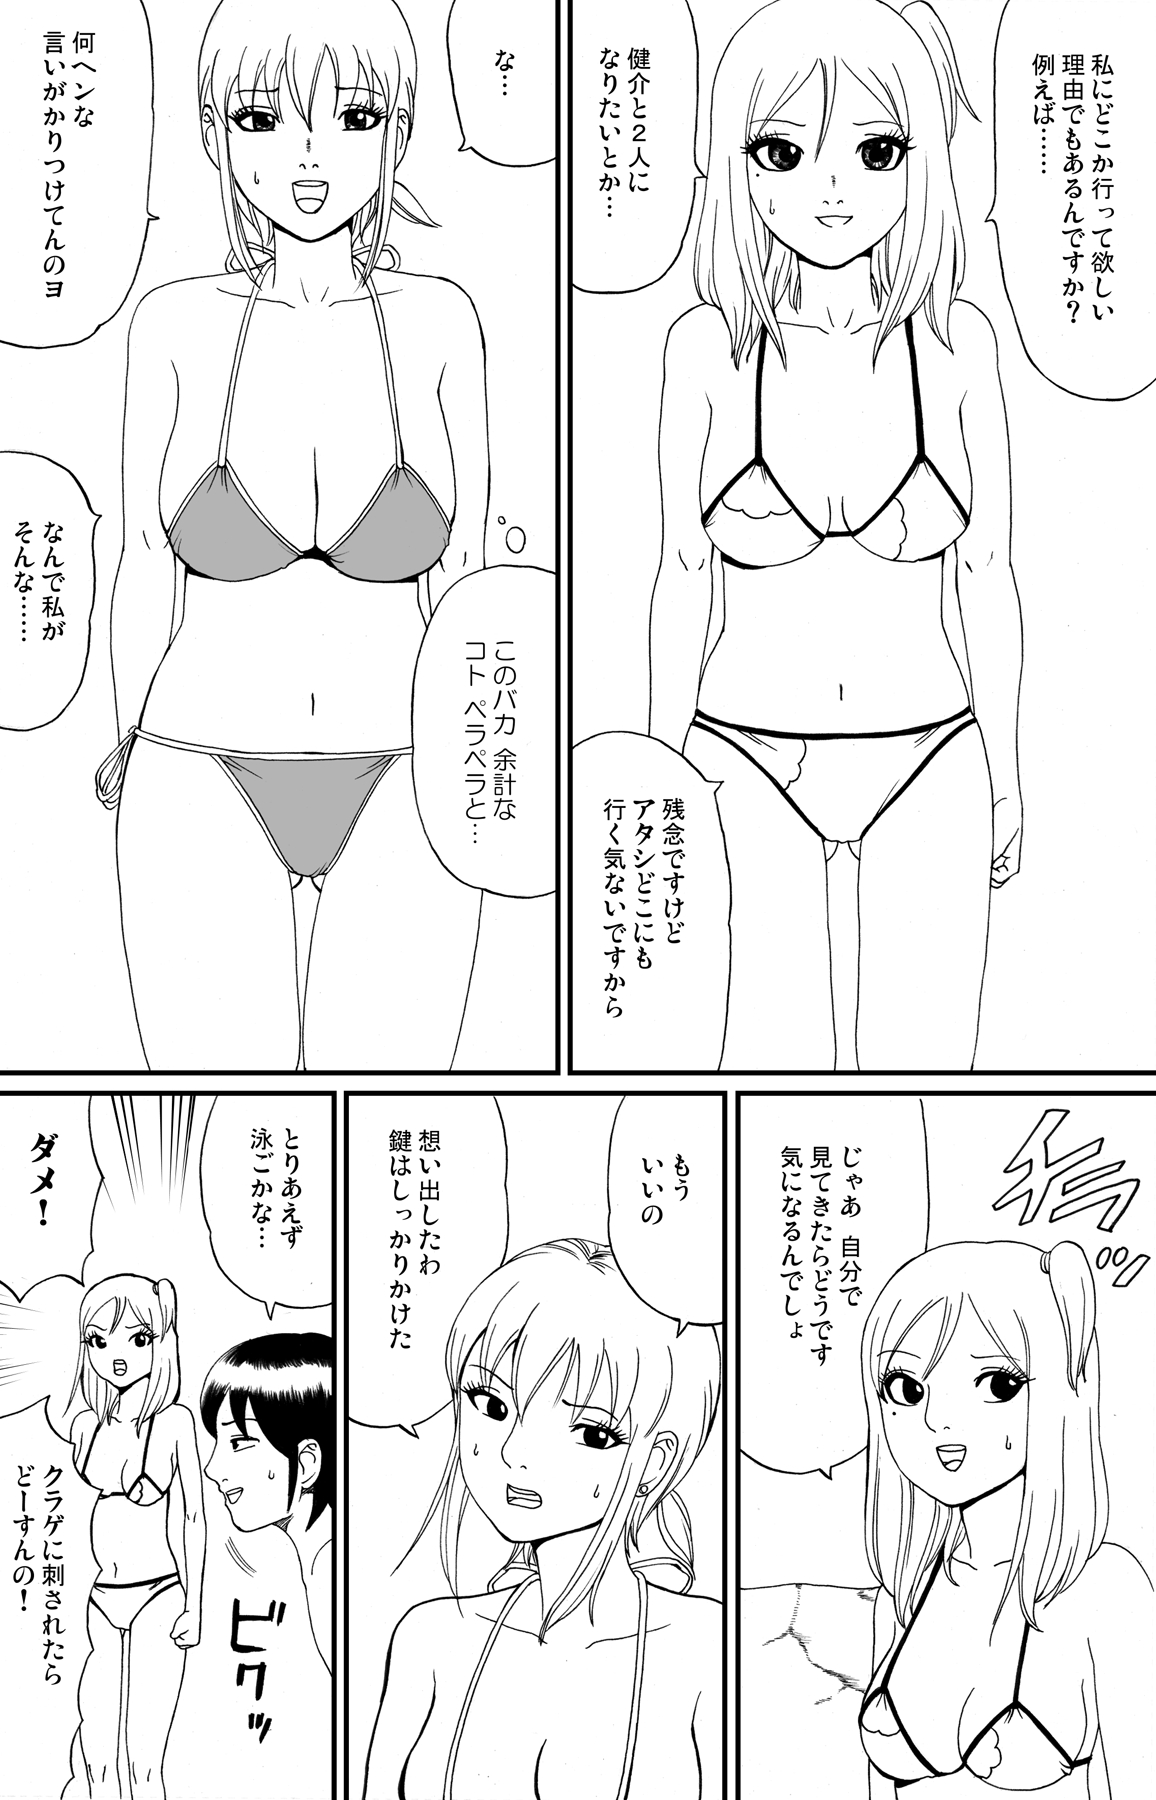 [nekomajin] fuwapoyo page 15 full